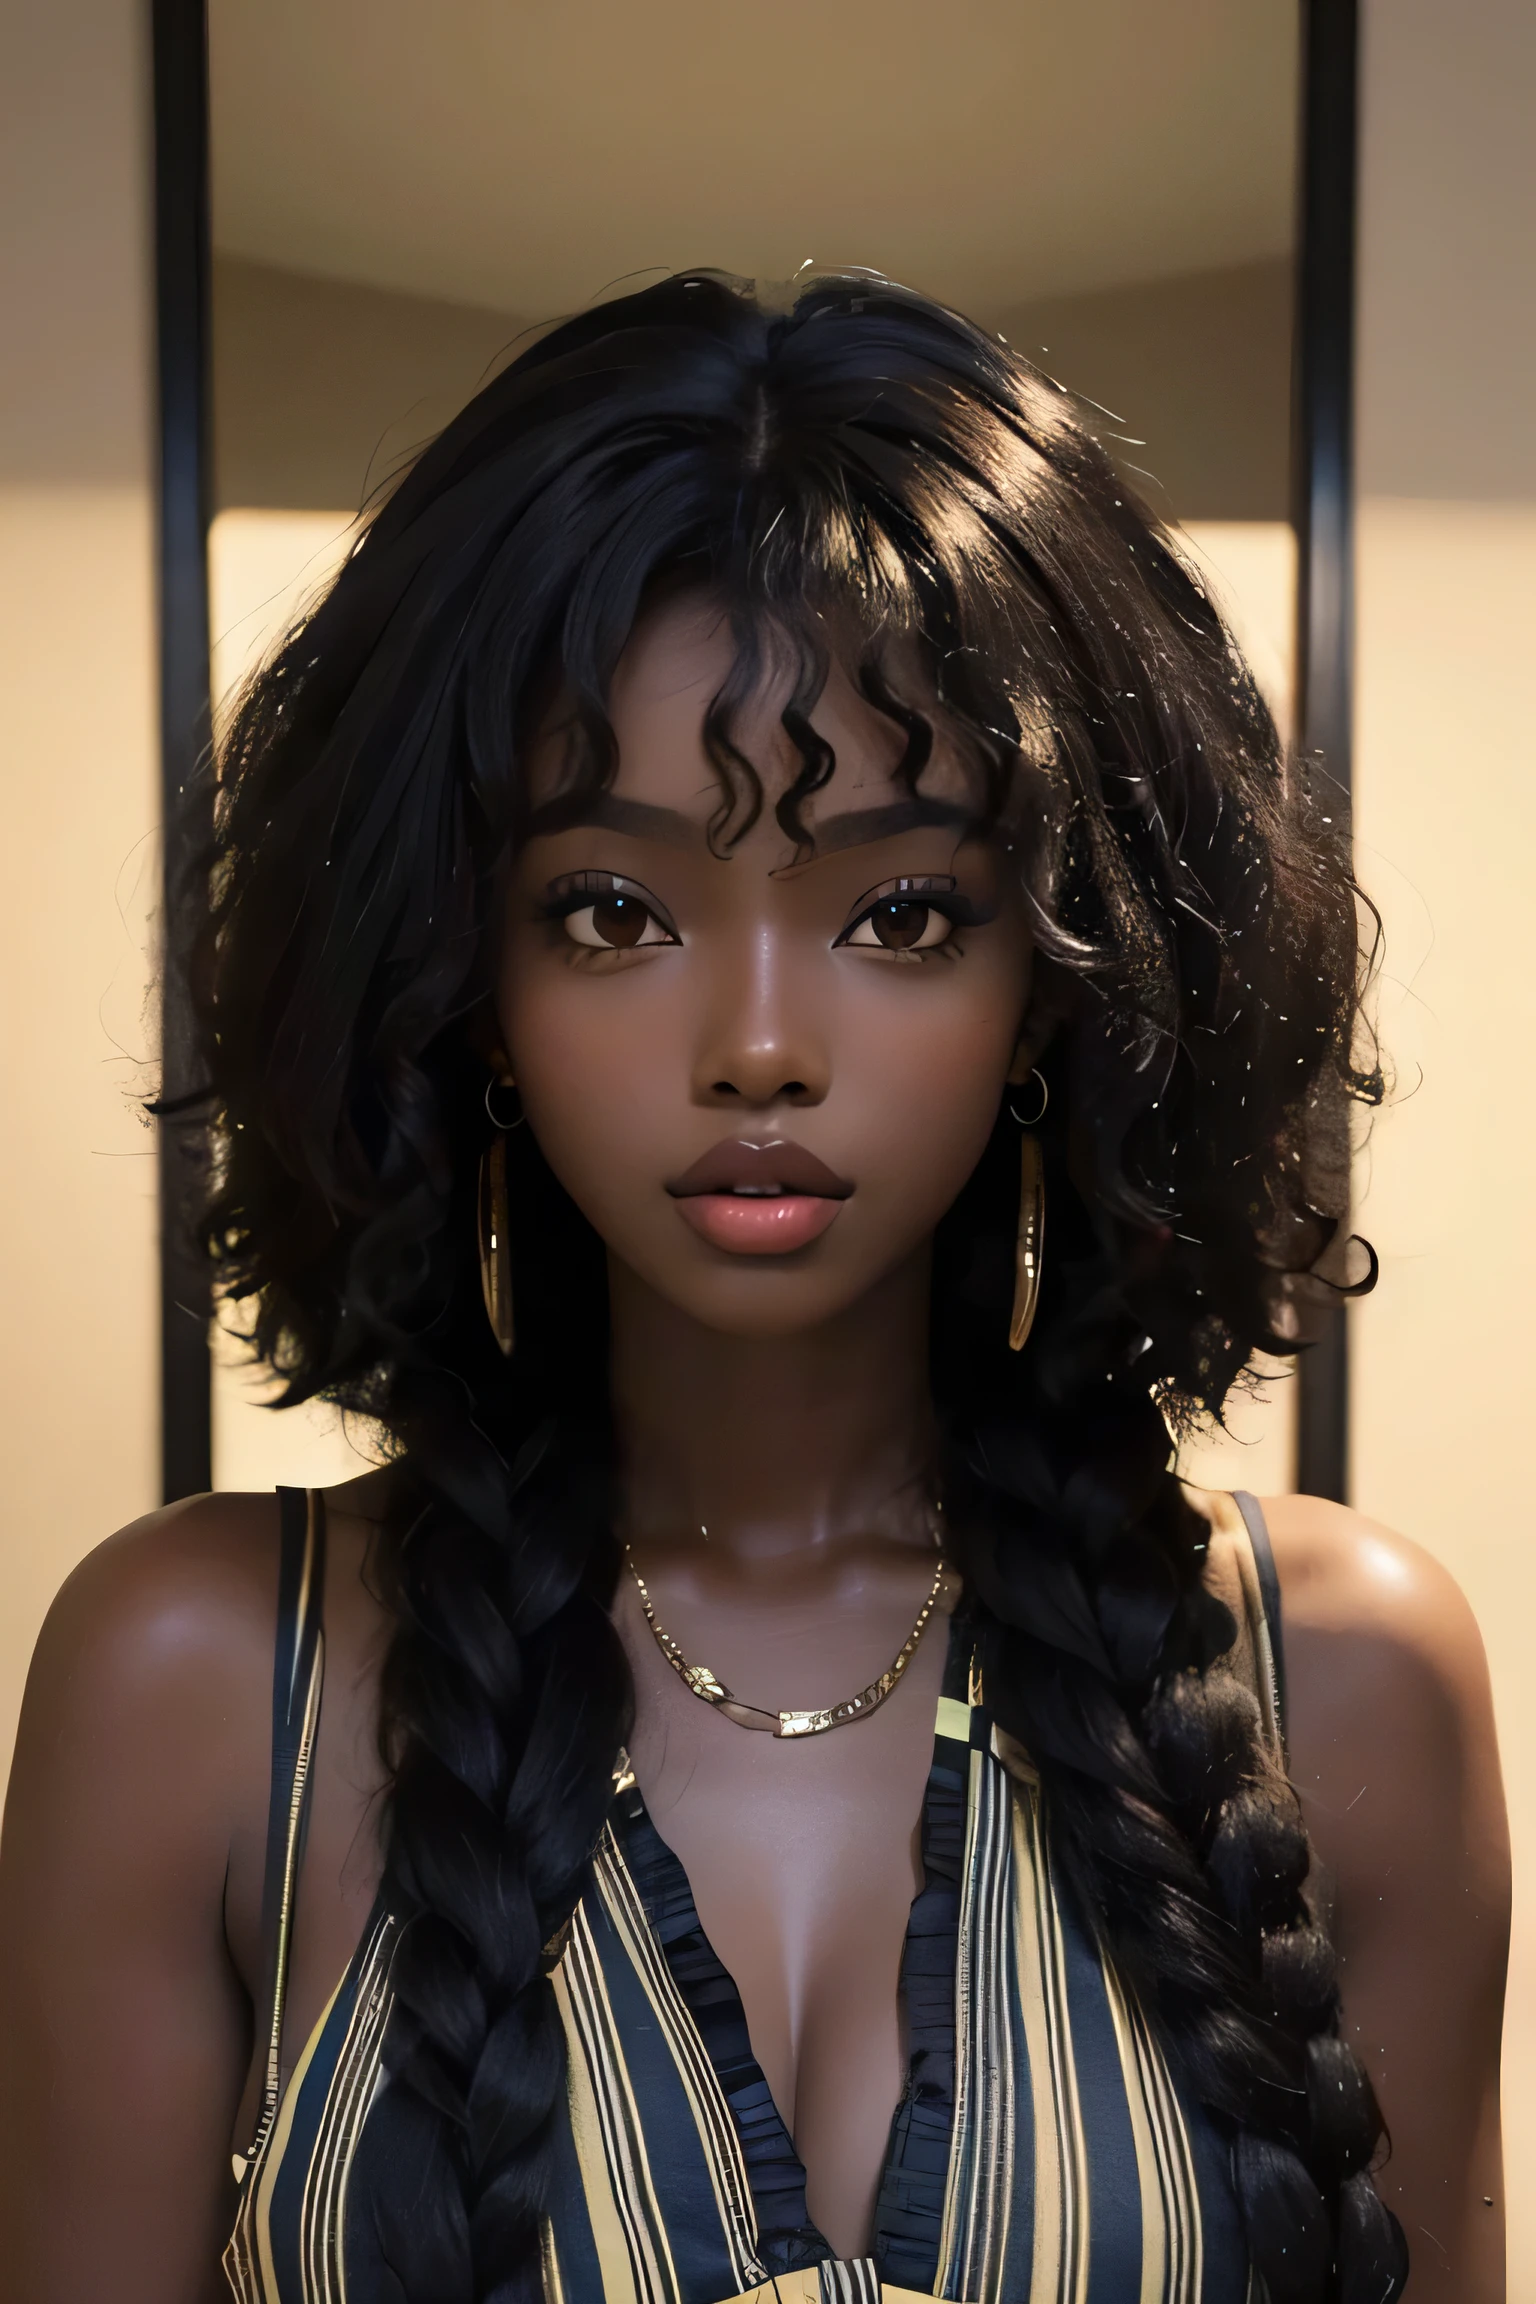 걸작, 최고의 품질, 아름다운 아프리카인 25세, 흑단 피부 여성, 곱슬머리, 곱슬곱슬한 검은 머리, 완벽한 얼굴, 멜라닌, 곱슬 머리, 